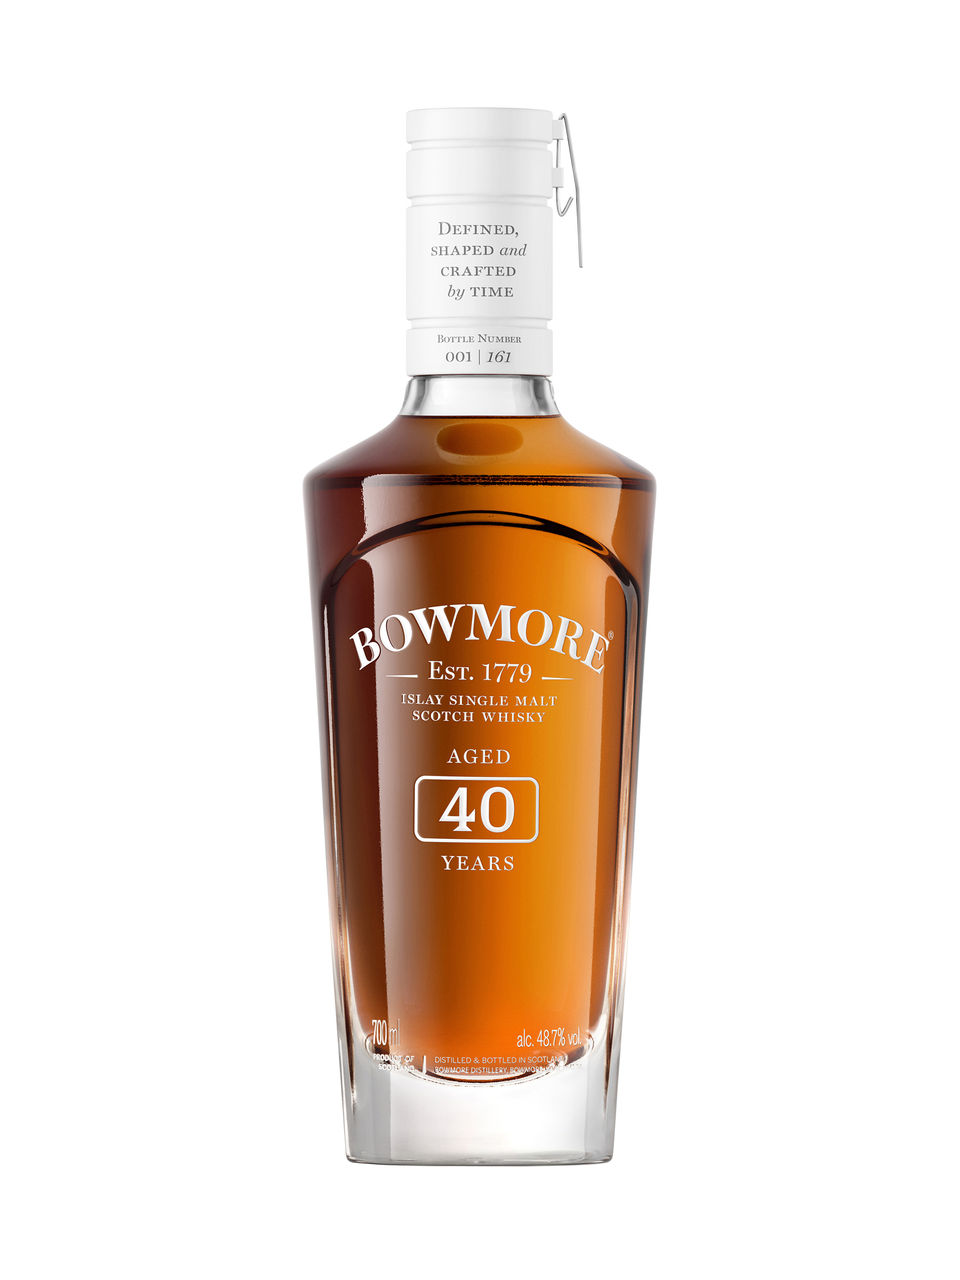 Whisky écossais Single Malt Bowmore Limited Edition 40 ans d'âge